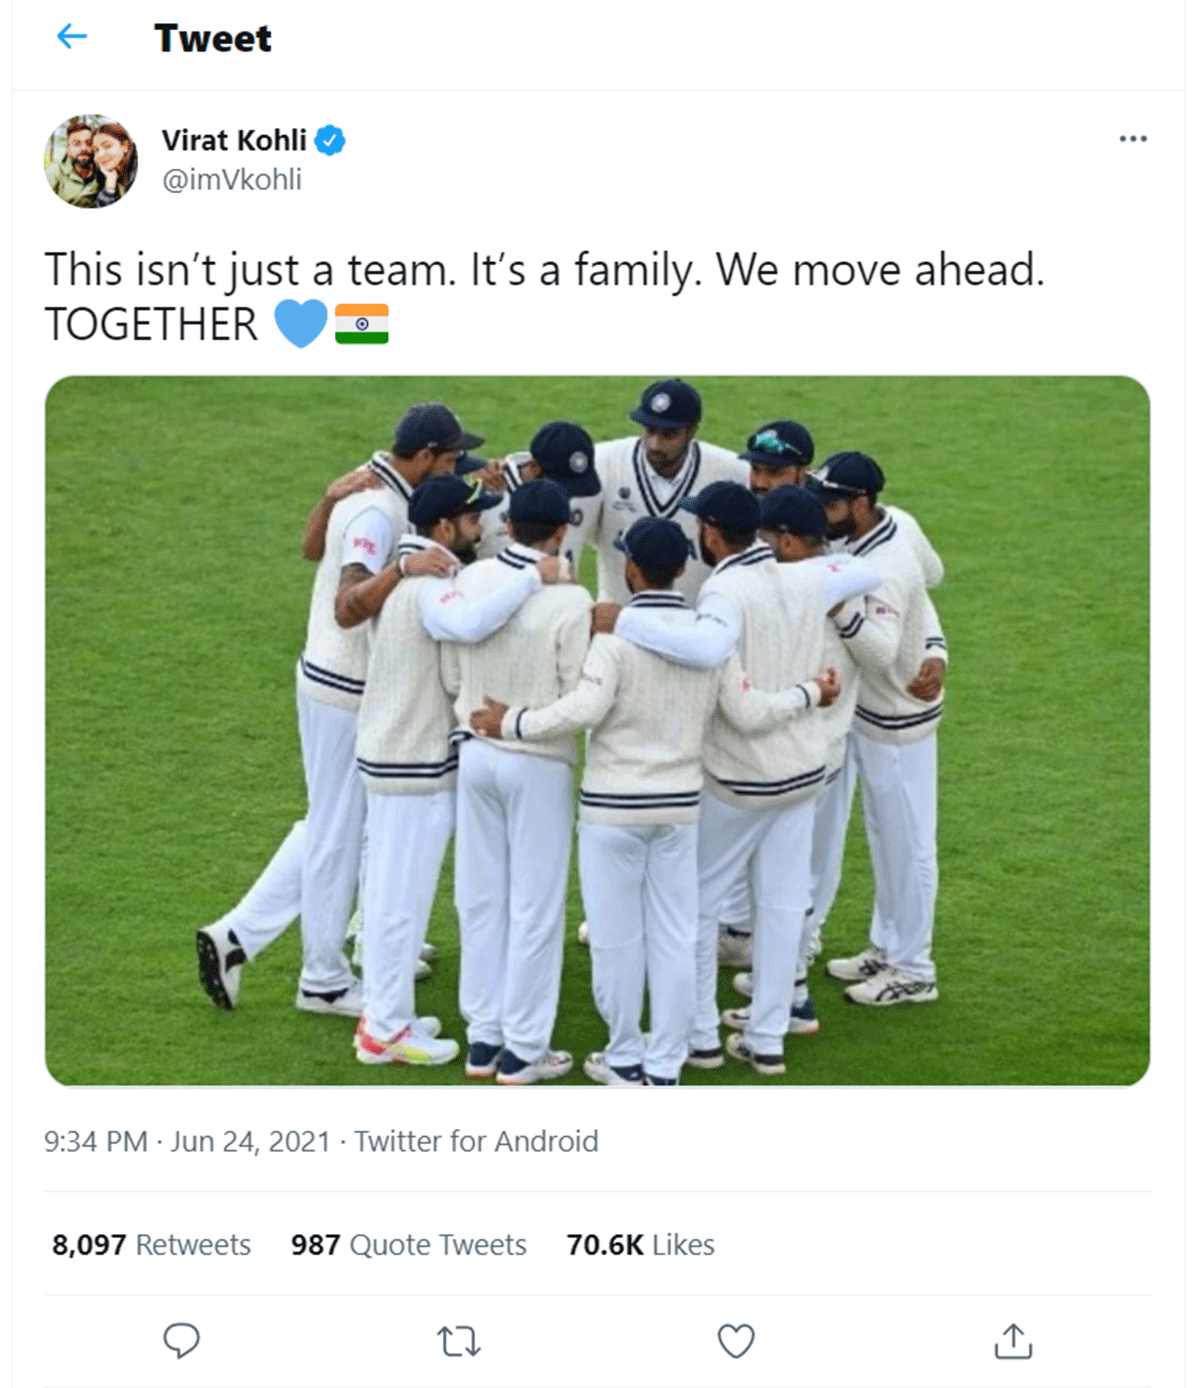 Virat Kohli's tweet